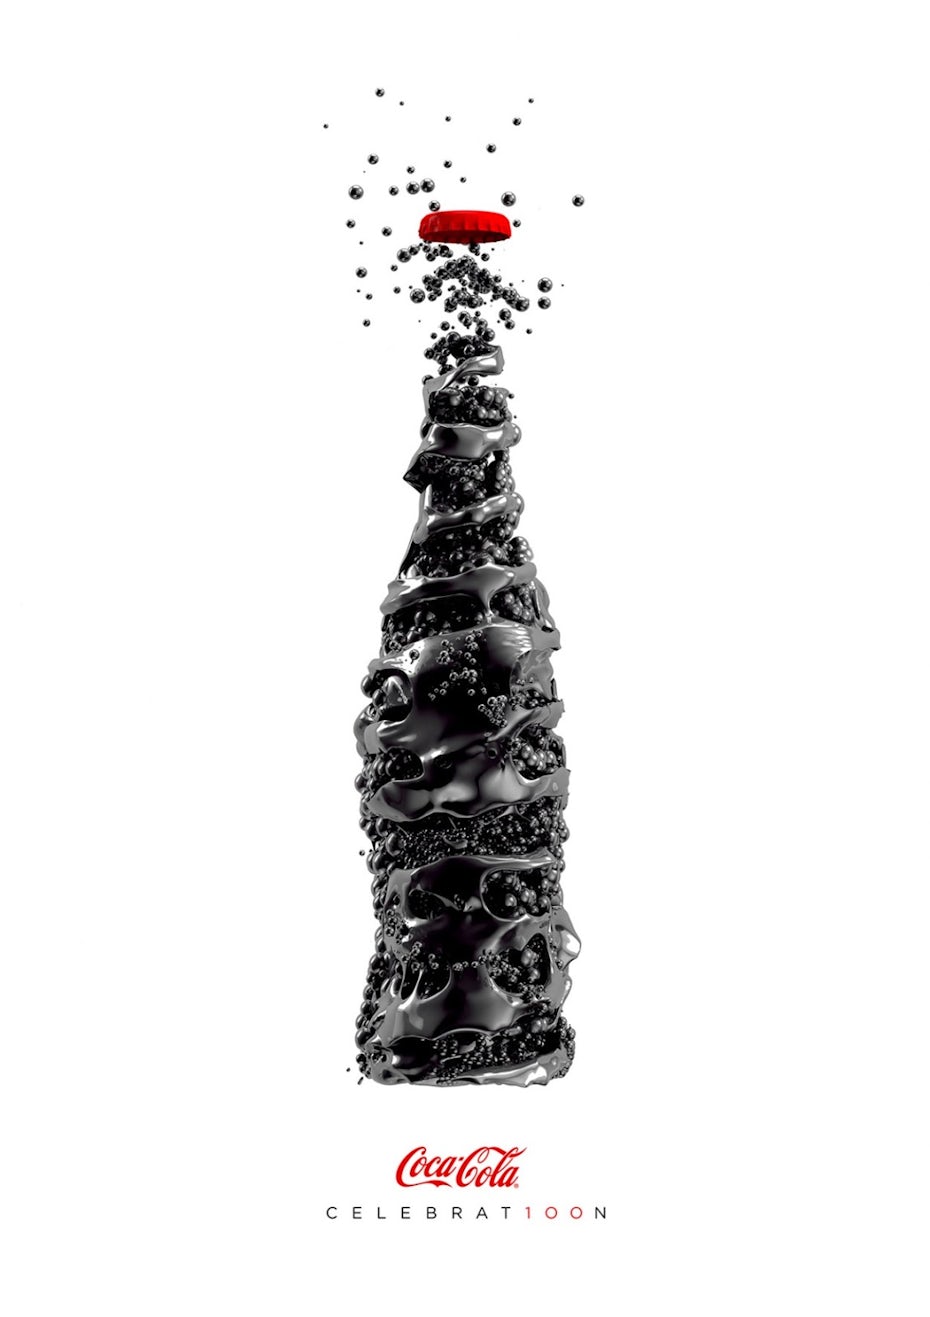 Bolder Creative’s take on the Coca-Cola campaign